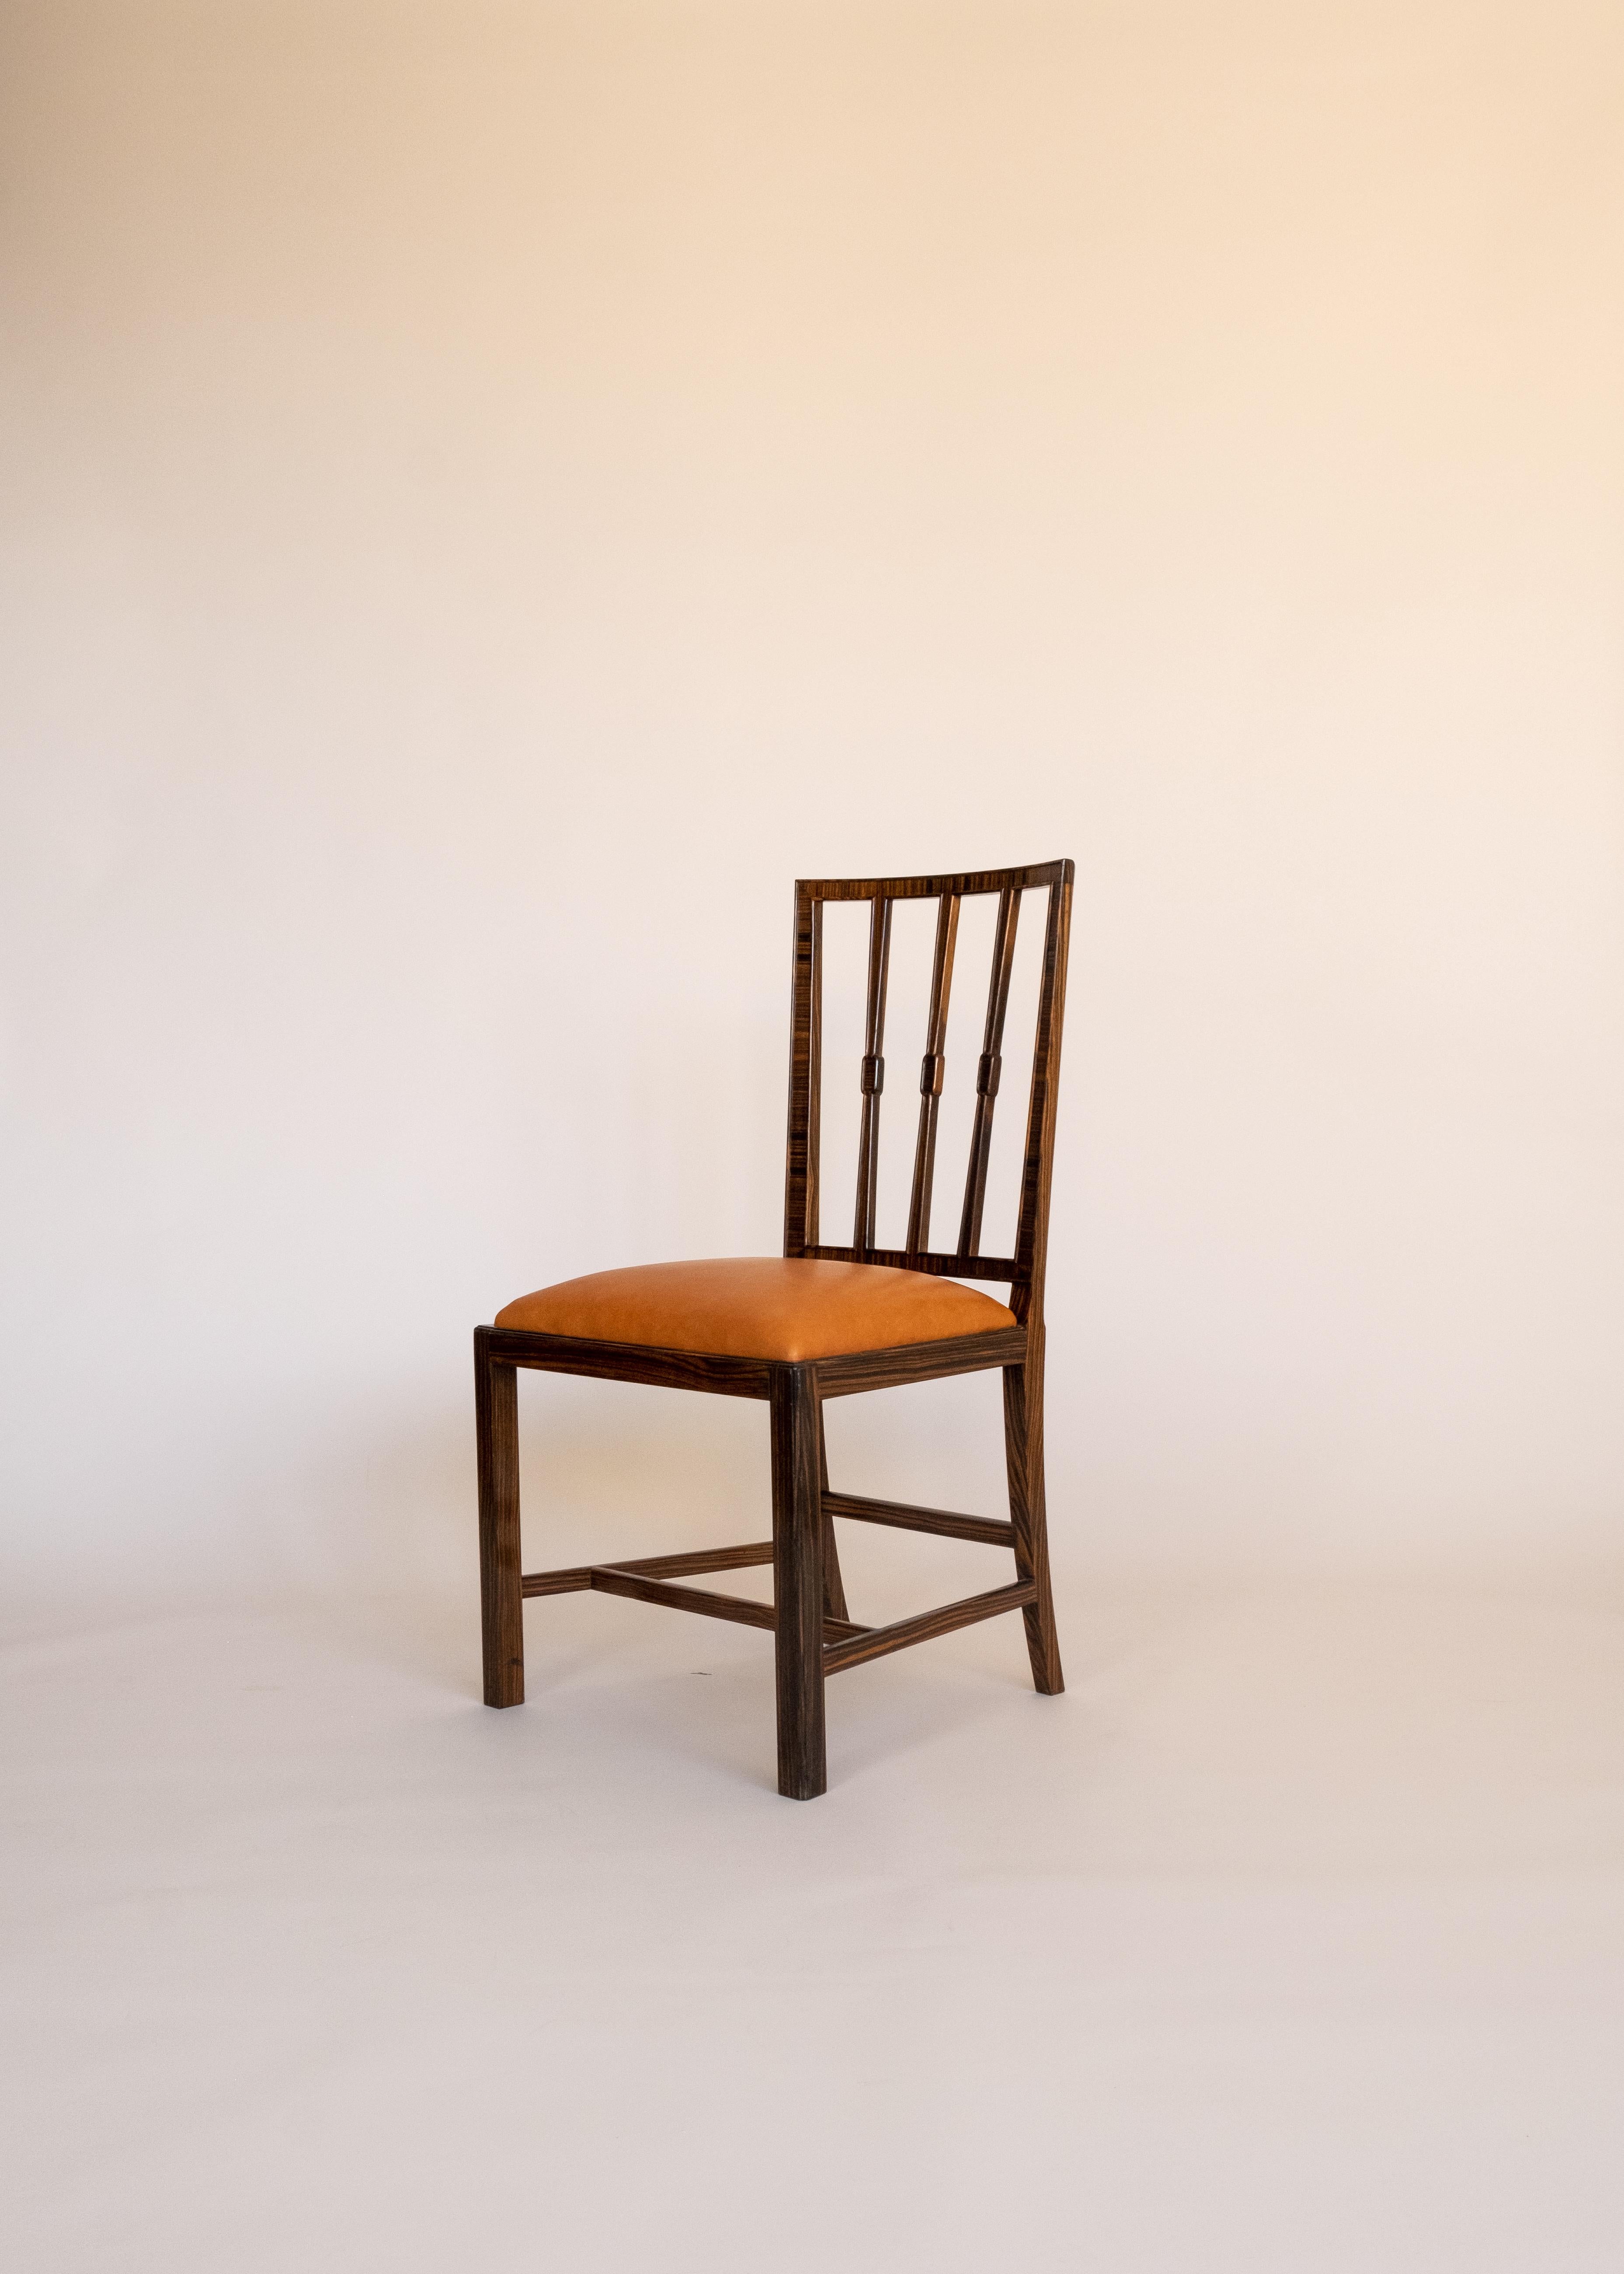 Set of Four Chairs by Lars W. Schlyter for Slöjdföreningens Skola  In Good Condition For Sale In Borås, SE